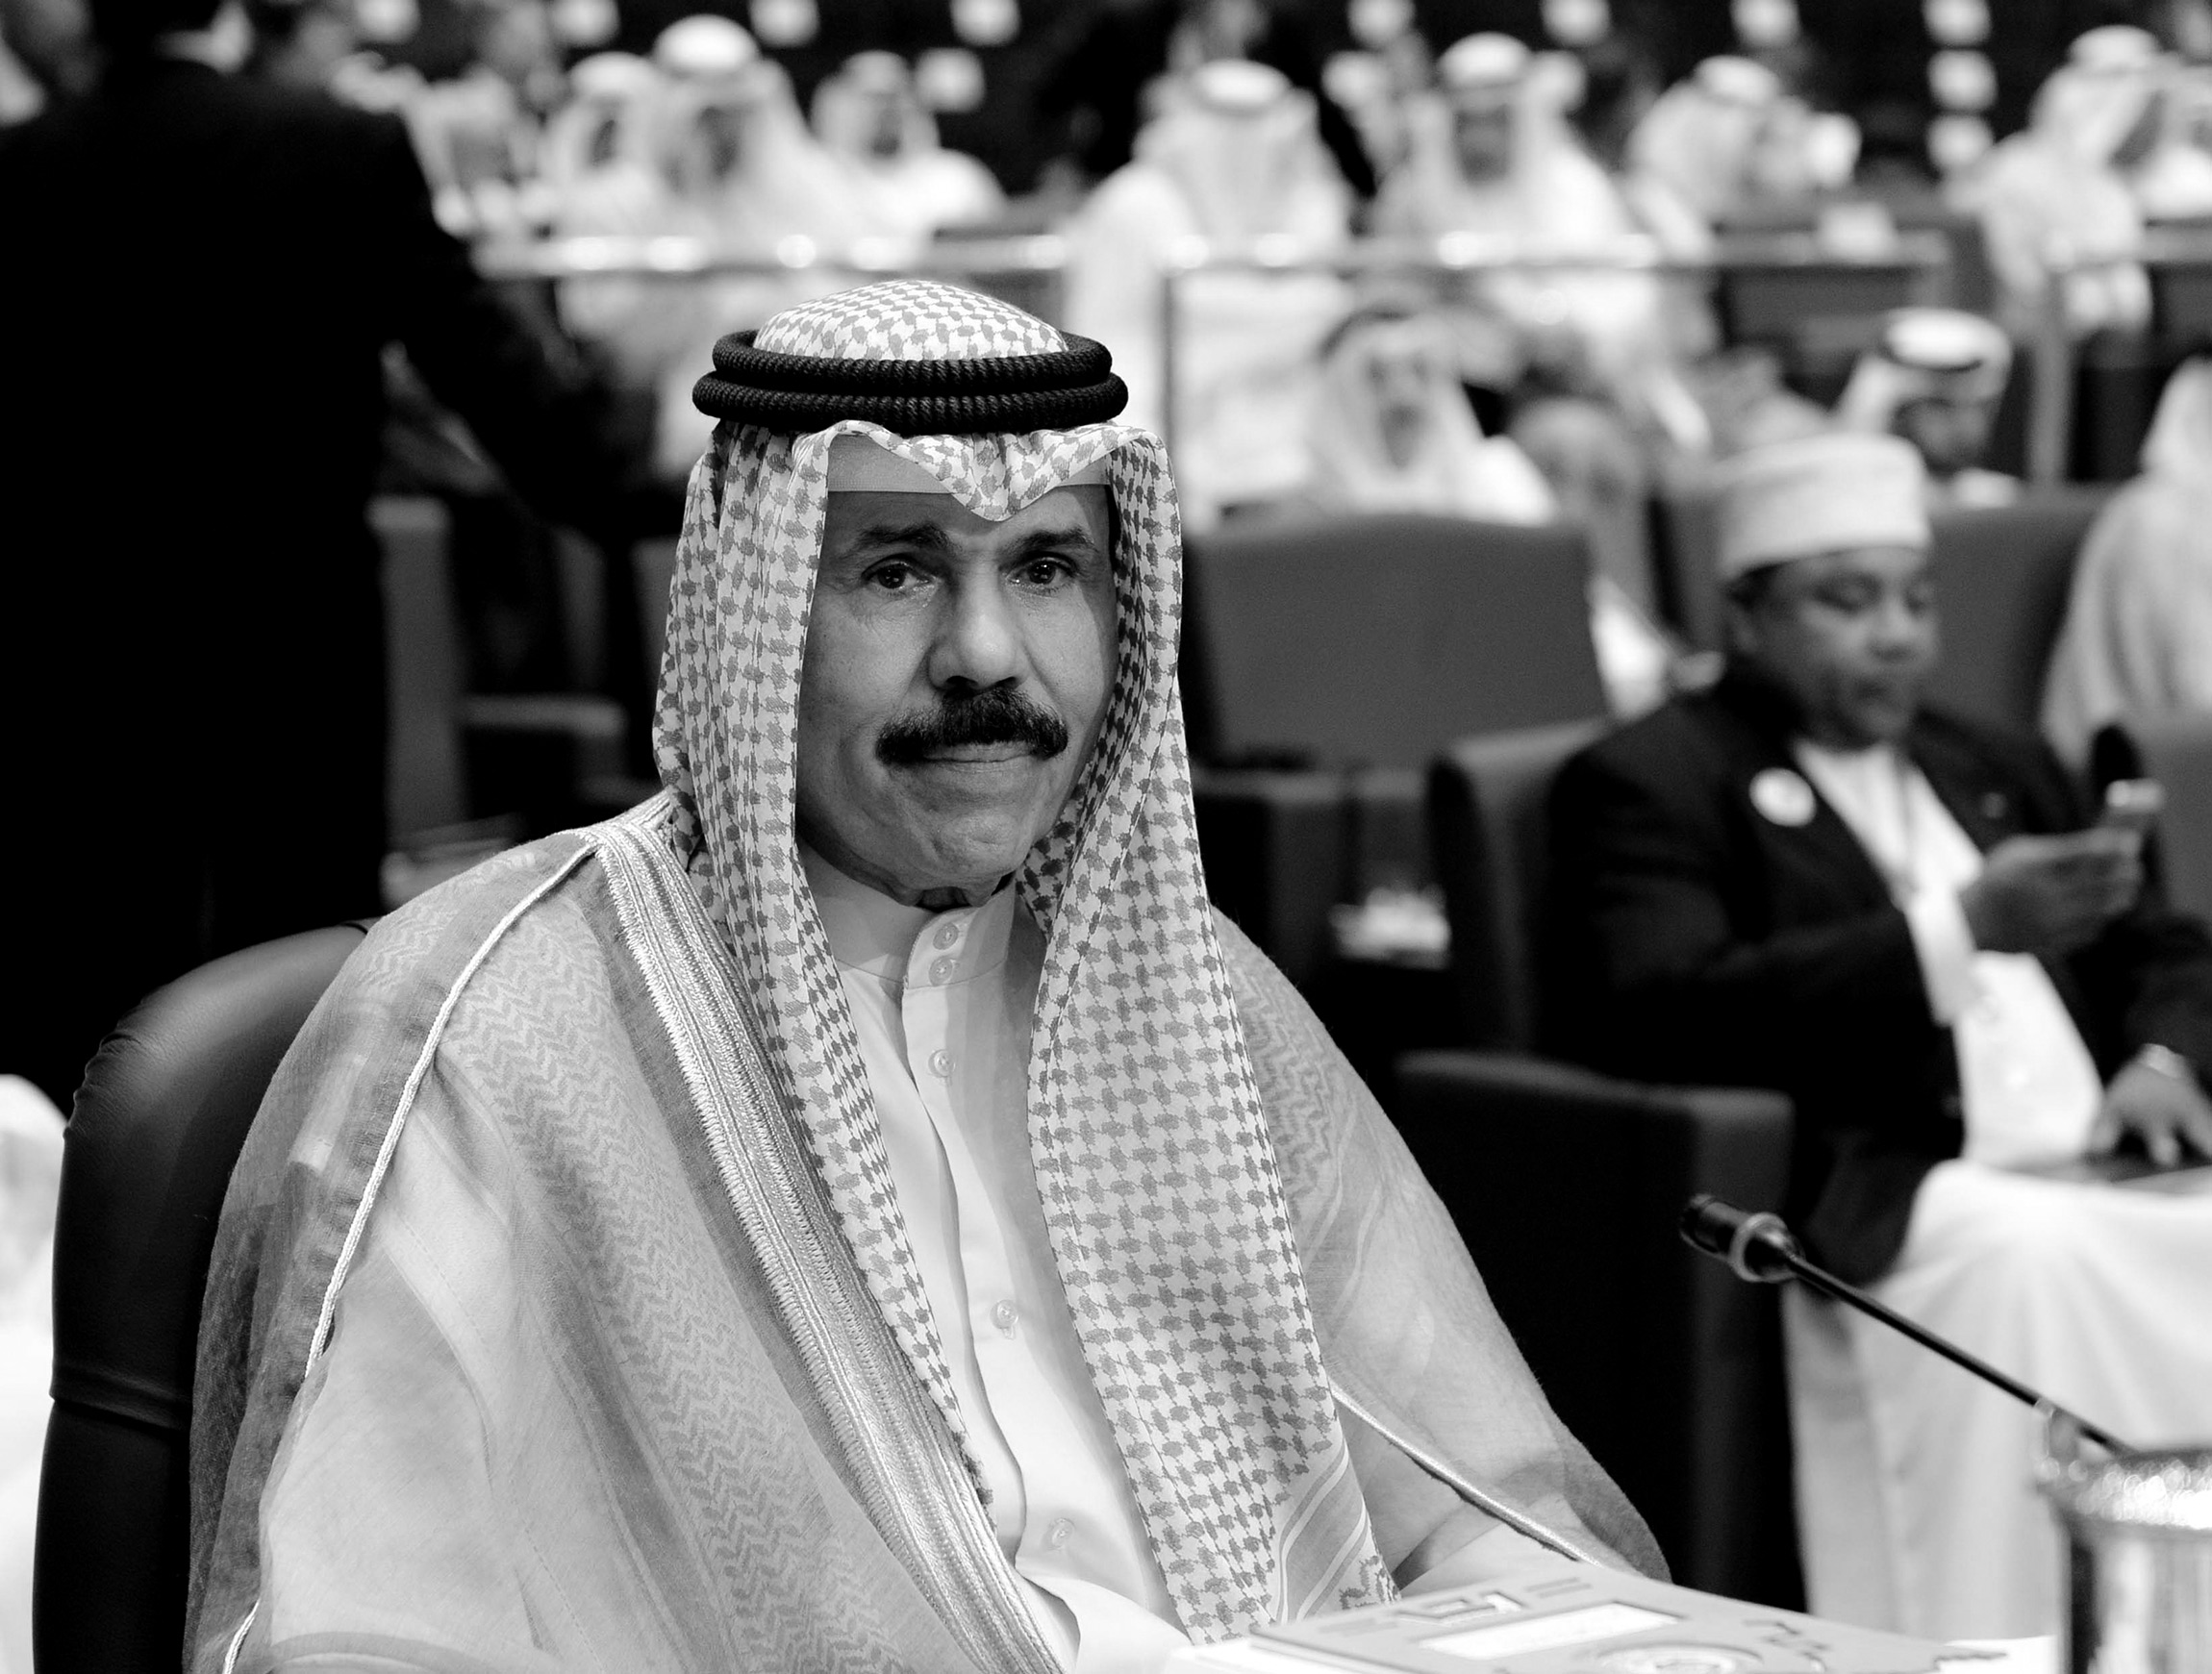 Он стал эмиром в 2020-м после смерти своего сводного брата Сабаха аль-Ахмеда аль-Джабера ас-Сабаха, который&nbsp;умер в возрасте 91 года. Шейх Наваф больше 50 лет служил на разных должностях, в частности, был заместителем начальника нацгвардии эмирата, затем министром внутренних дел и первым заместителем премьер-министра страны. С 2006 года был наследным принцем. Он умер 16 декабря, ему было 86 лет.